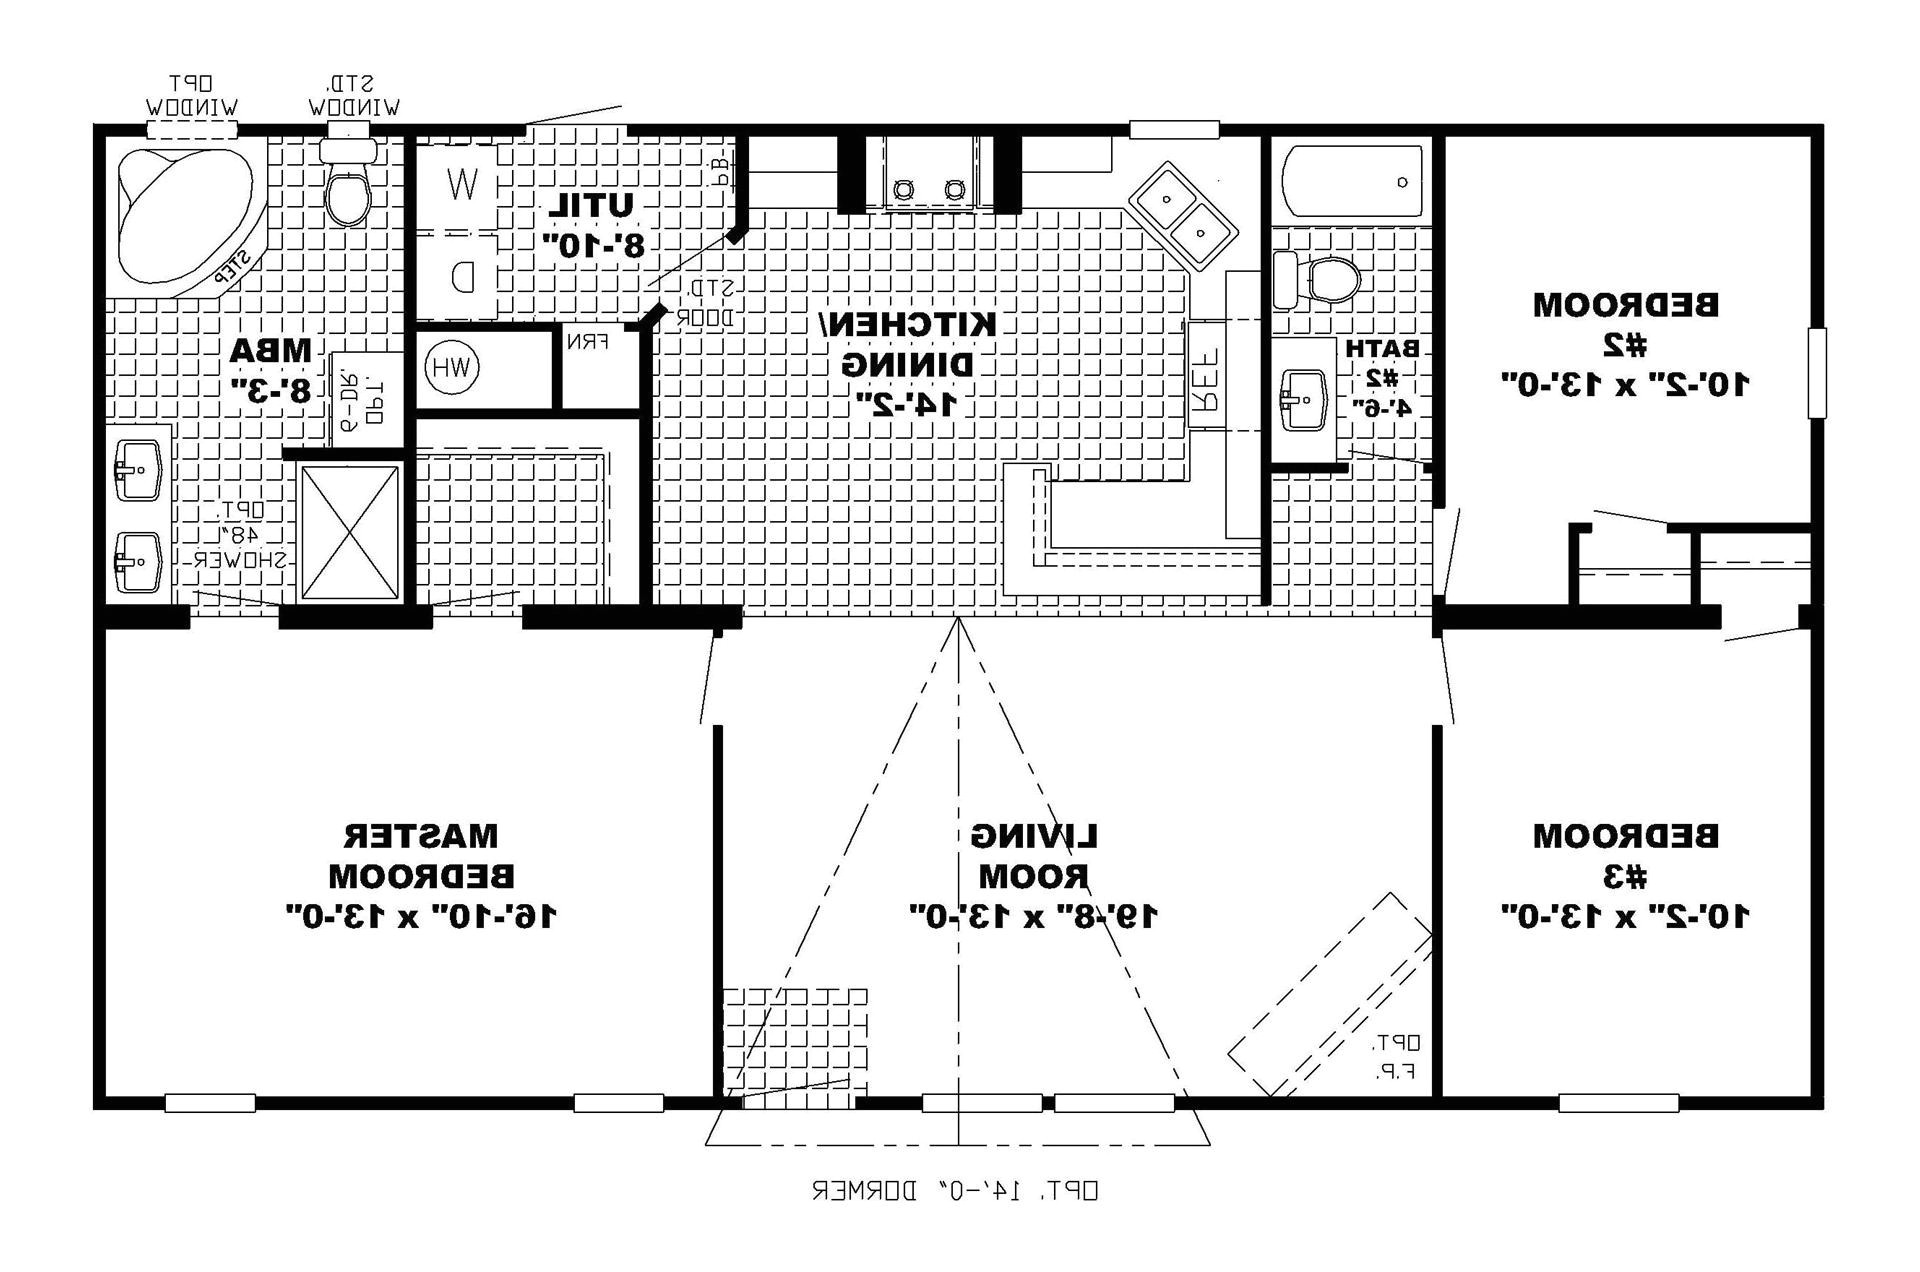 1 story open floor home plans